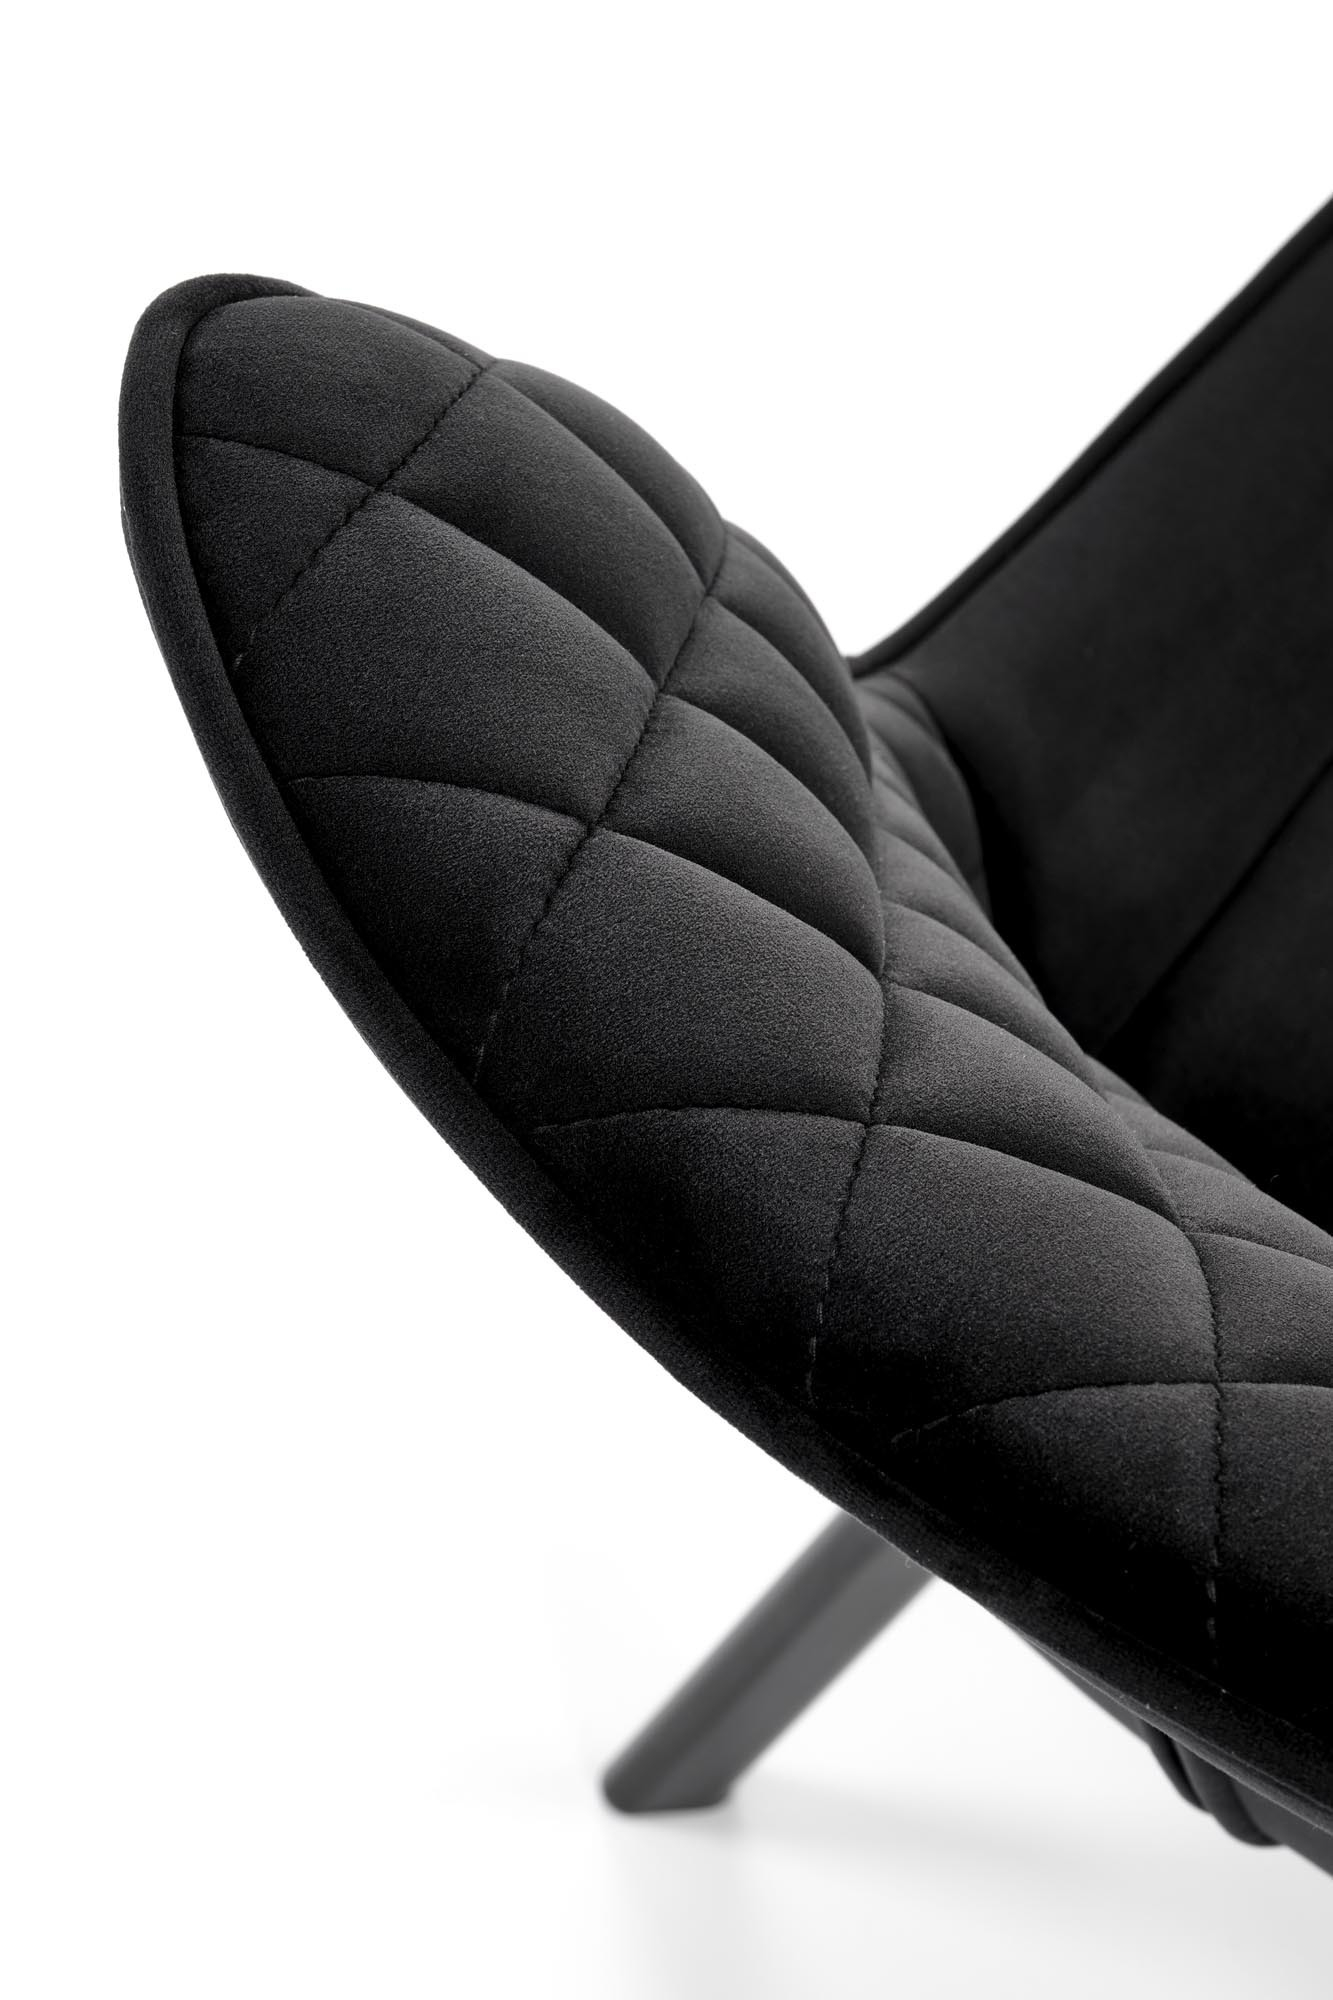 Krzesło z funkcją obrotu K520 krzesło nogi - czarne, siedzisko - czarny